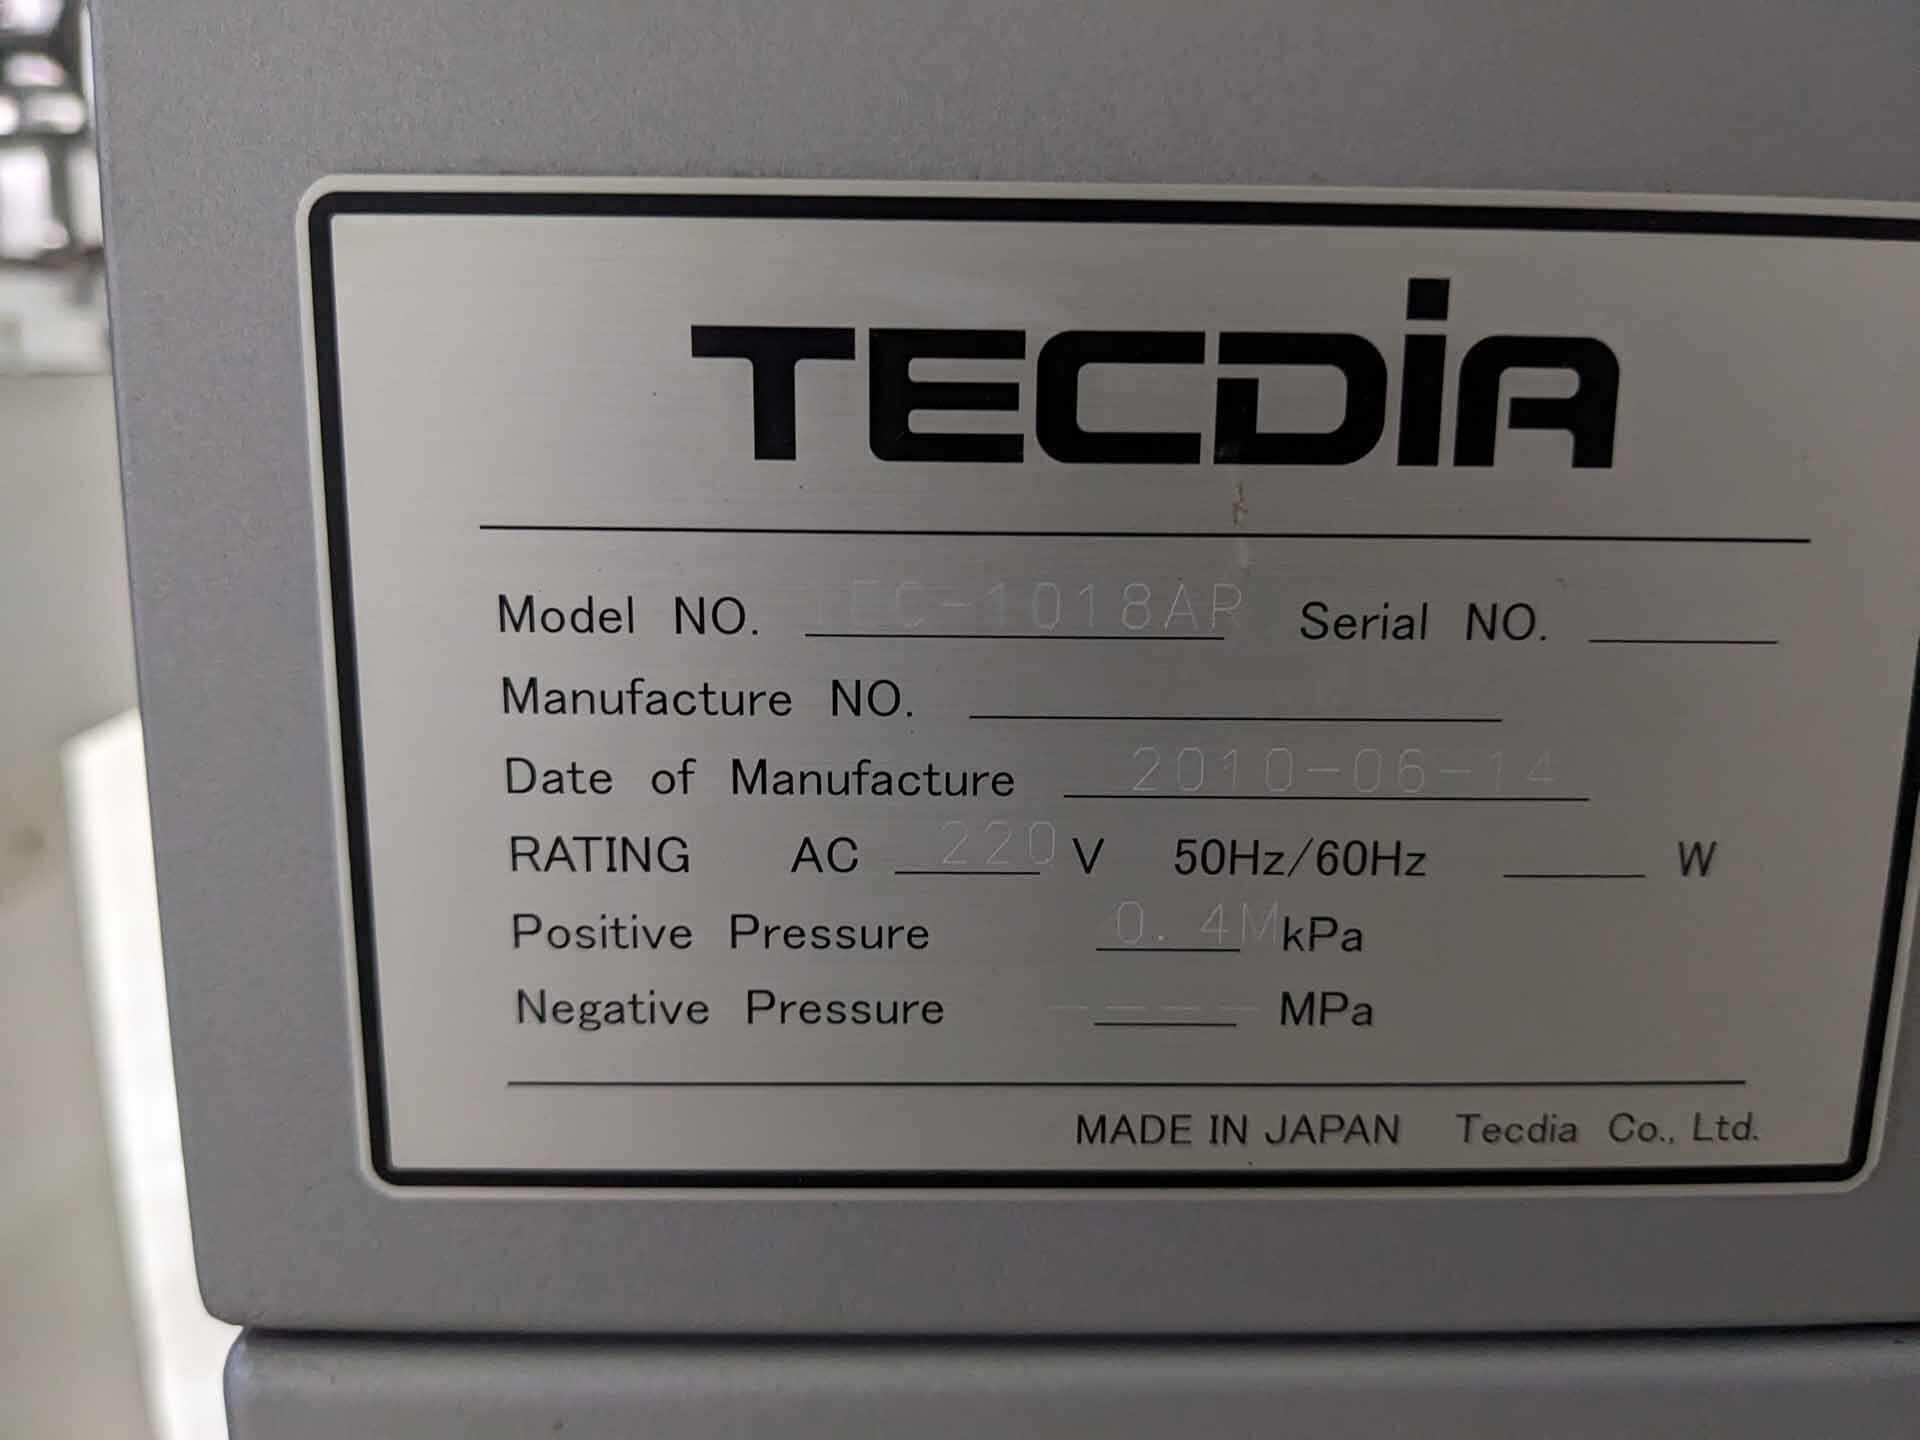 图为 已使用的 TECDIA TEC 1018AR 待售